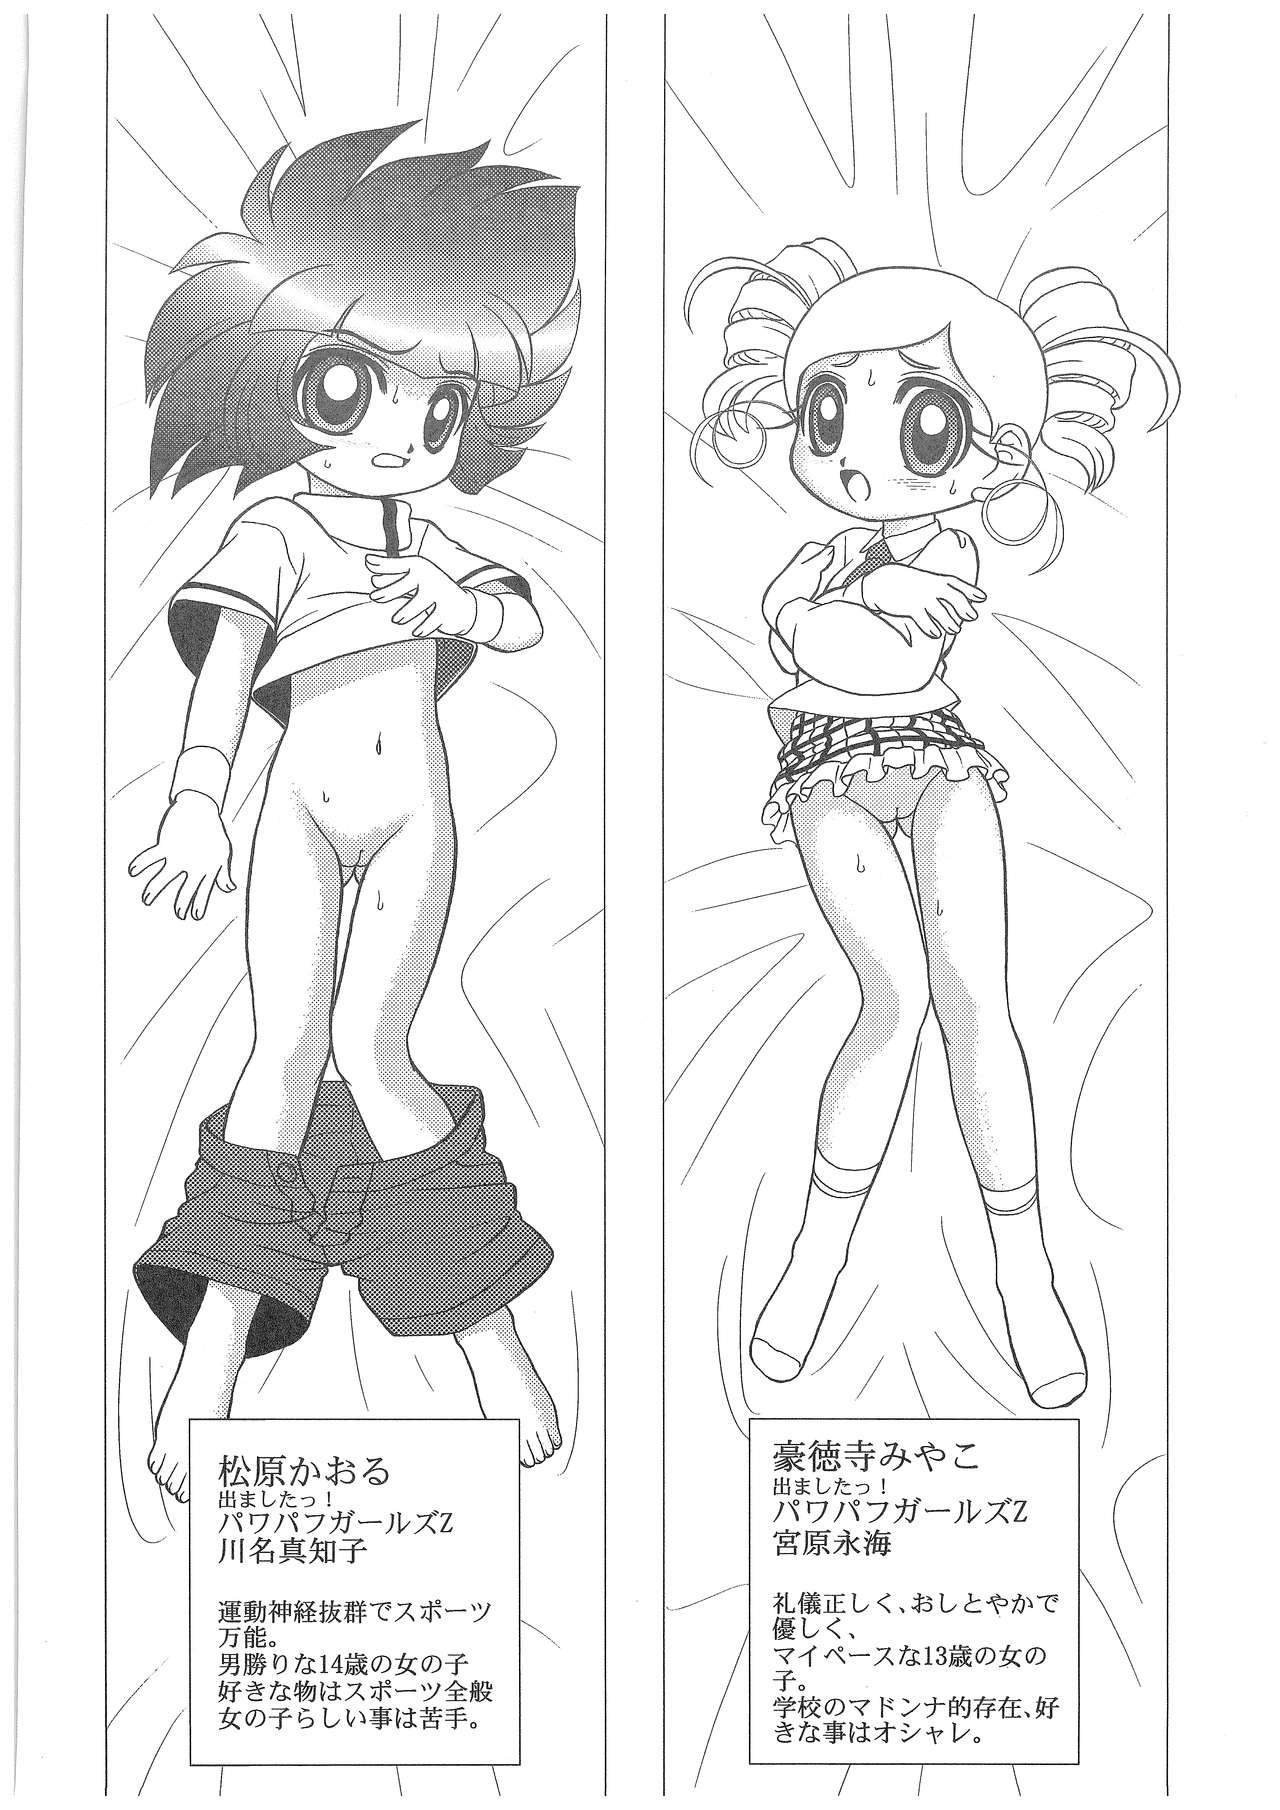 Power Puff Girls Z 001 hentai manga picture 2